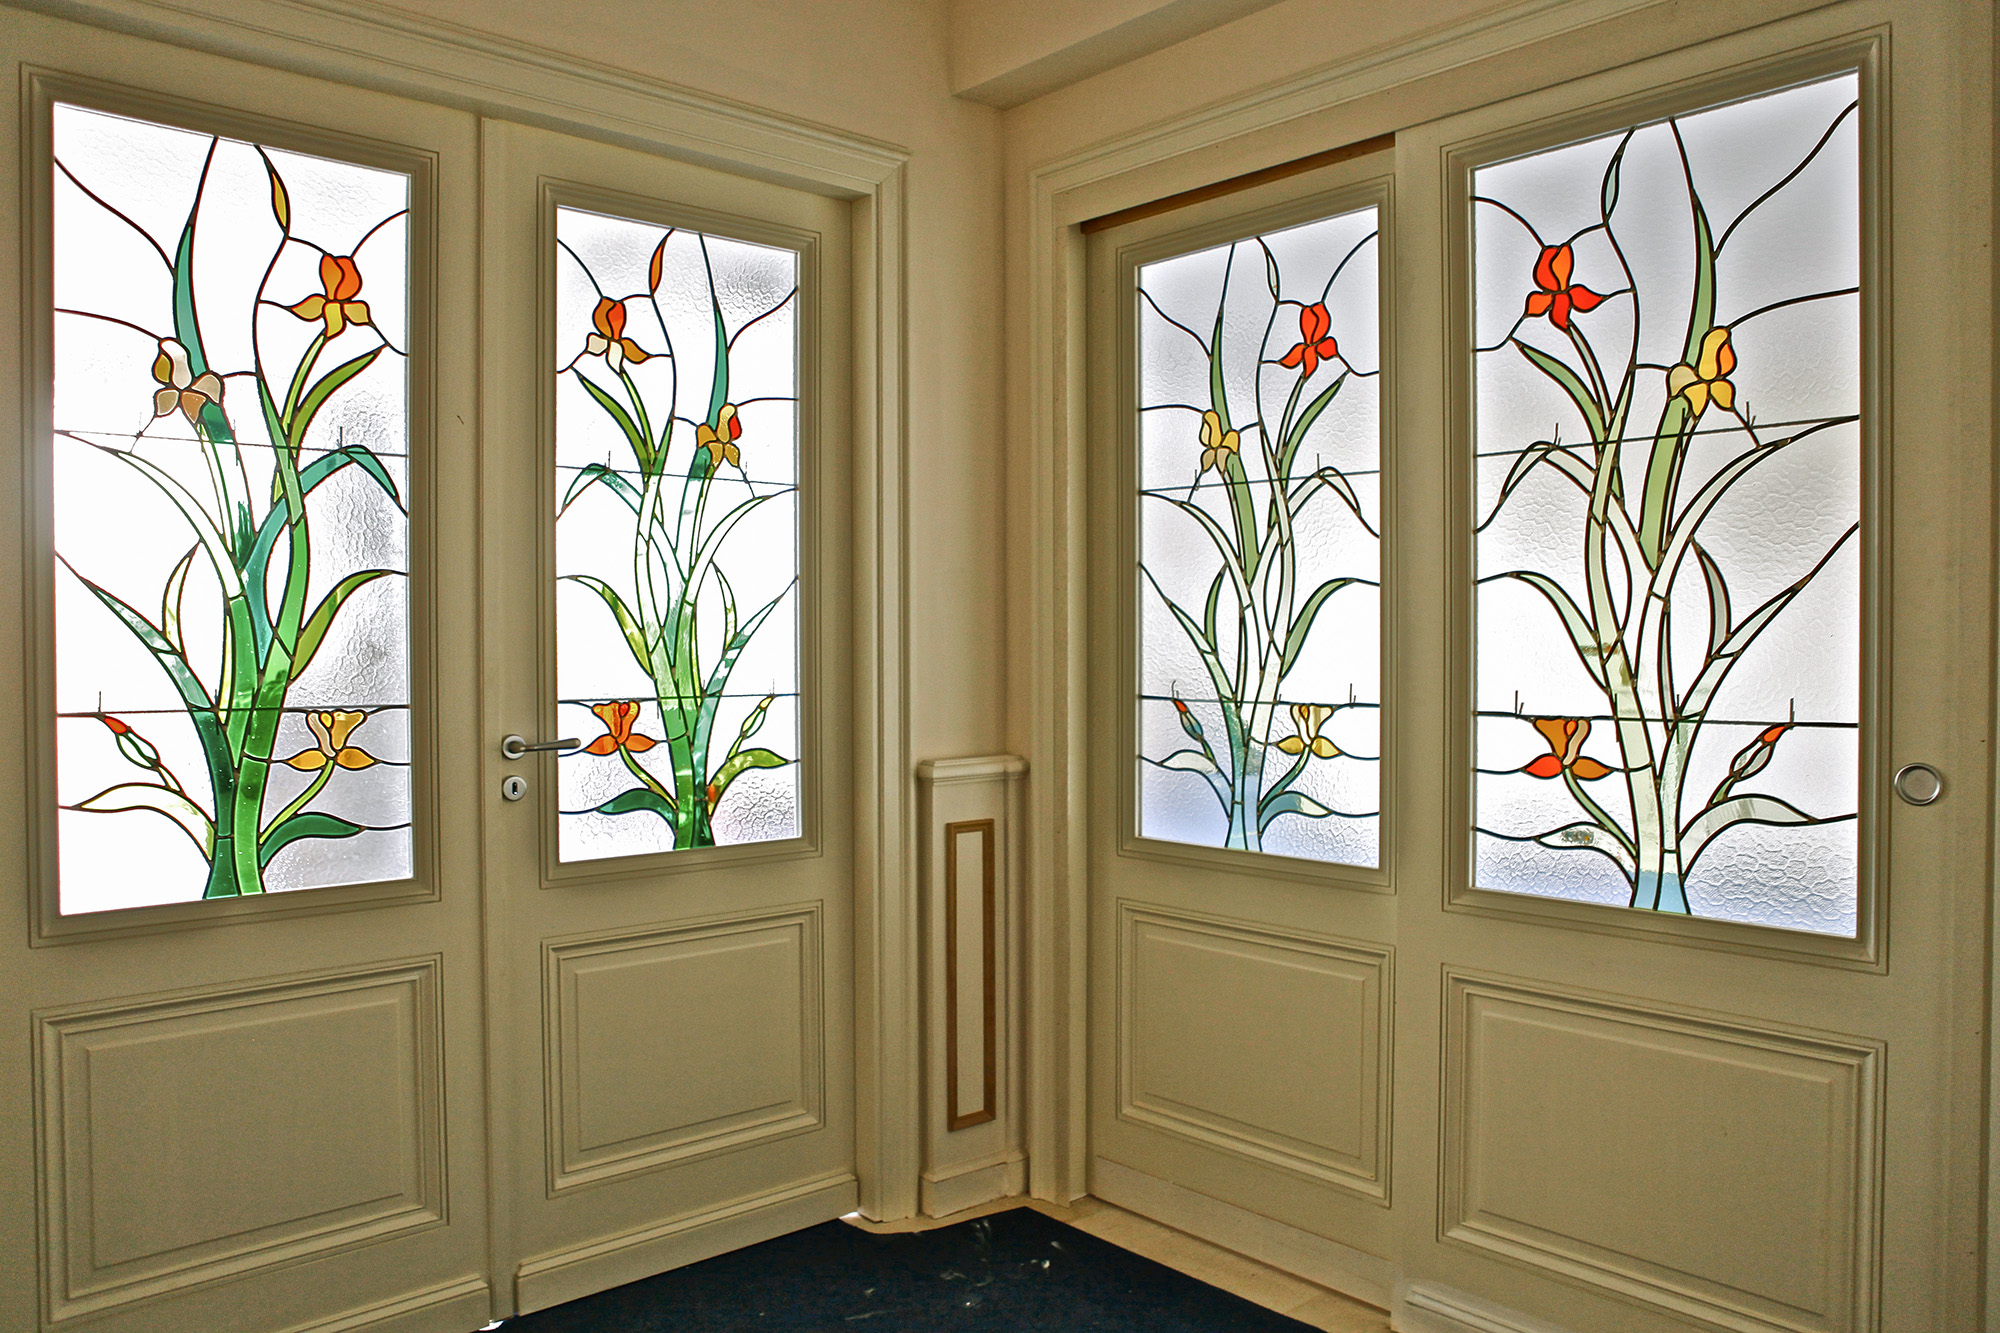 vitraux au motif floral posé sur deux portes intérieures dans un hall d'entrée en décor de maison chez un particulier, réalisé par l'Atelier Vitrail Saint-Joseph